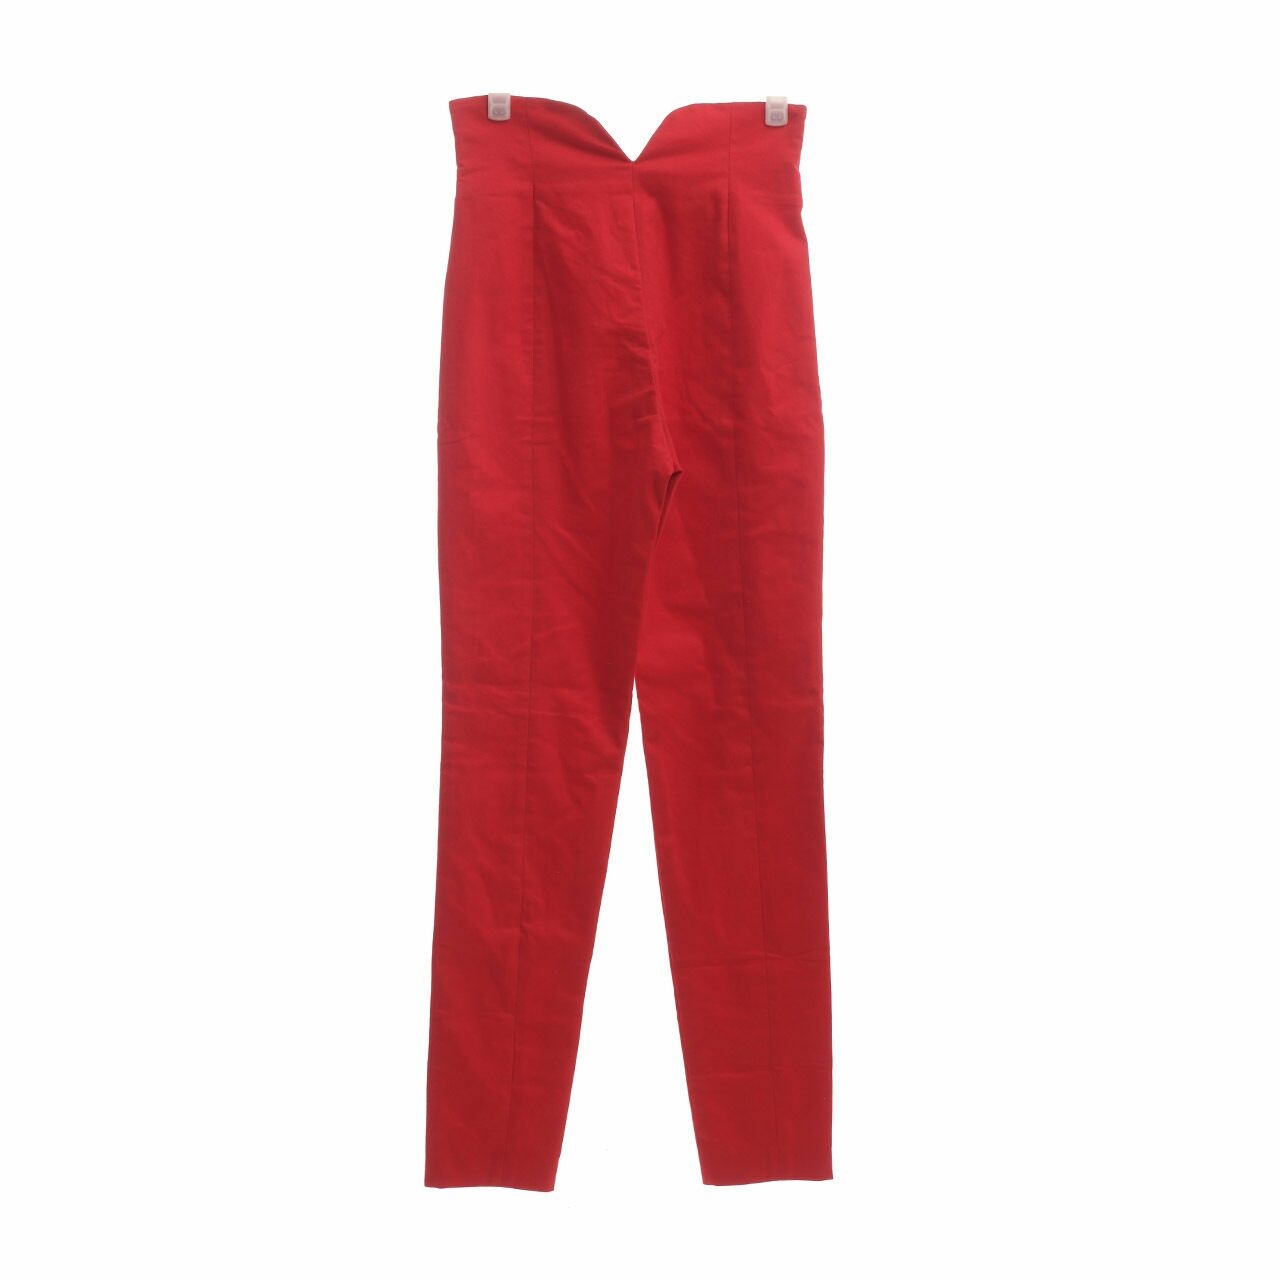 LOTUZ Red High Waist Long Pants